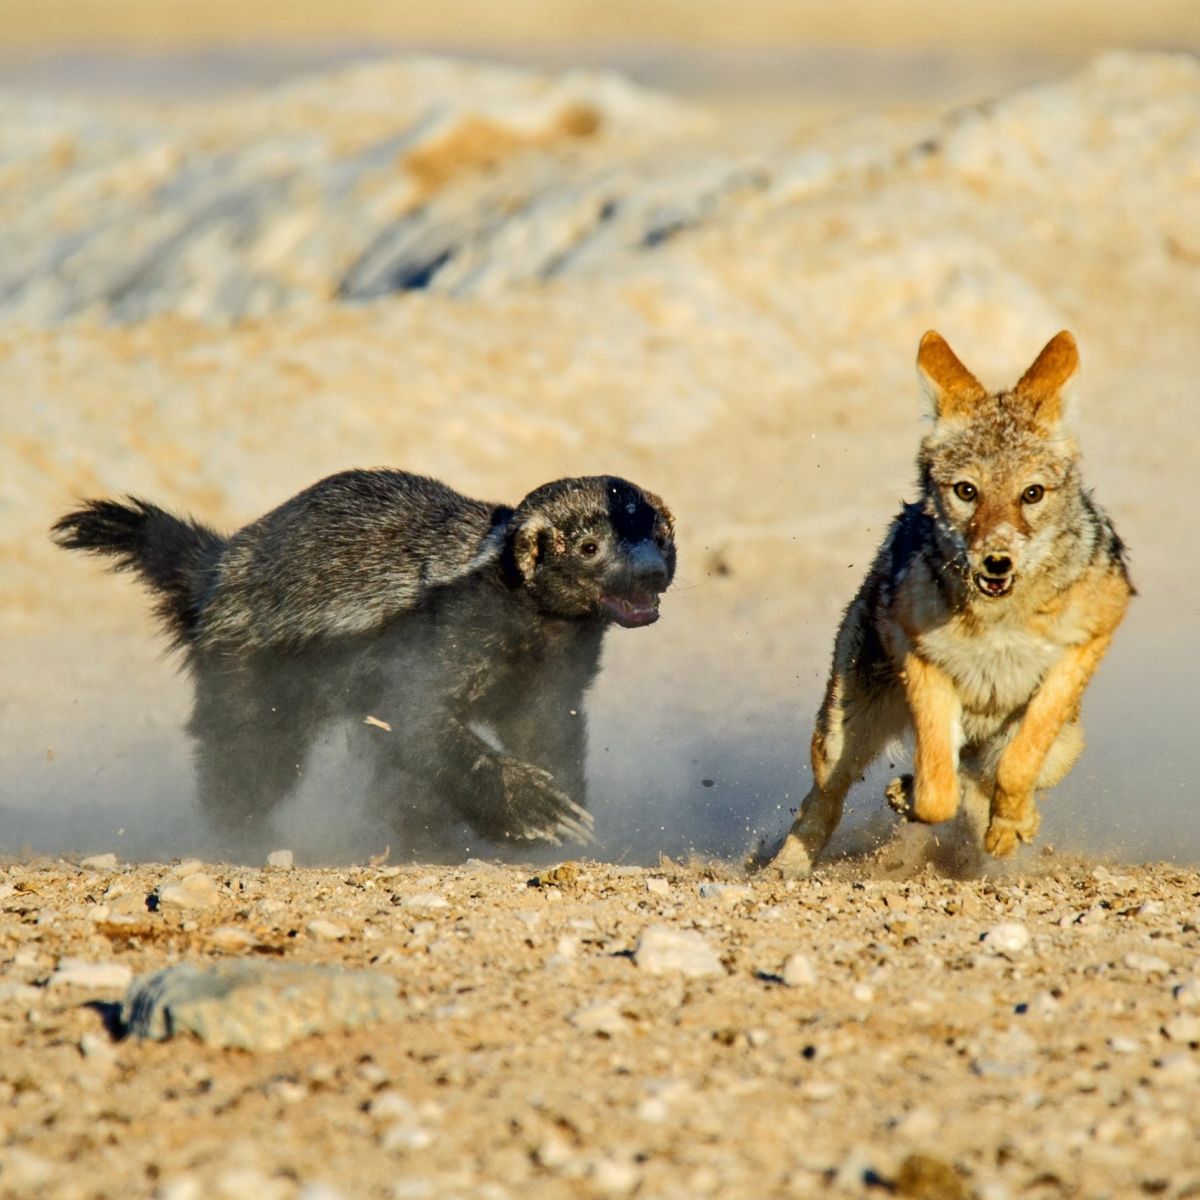 Ours. Honey badger chasing black-backed jackal in Etosha National Park, Namibia